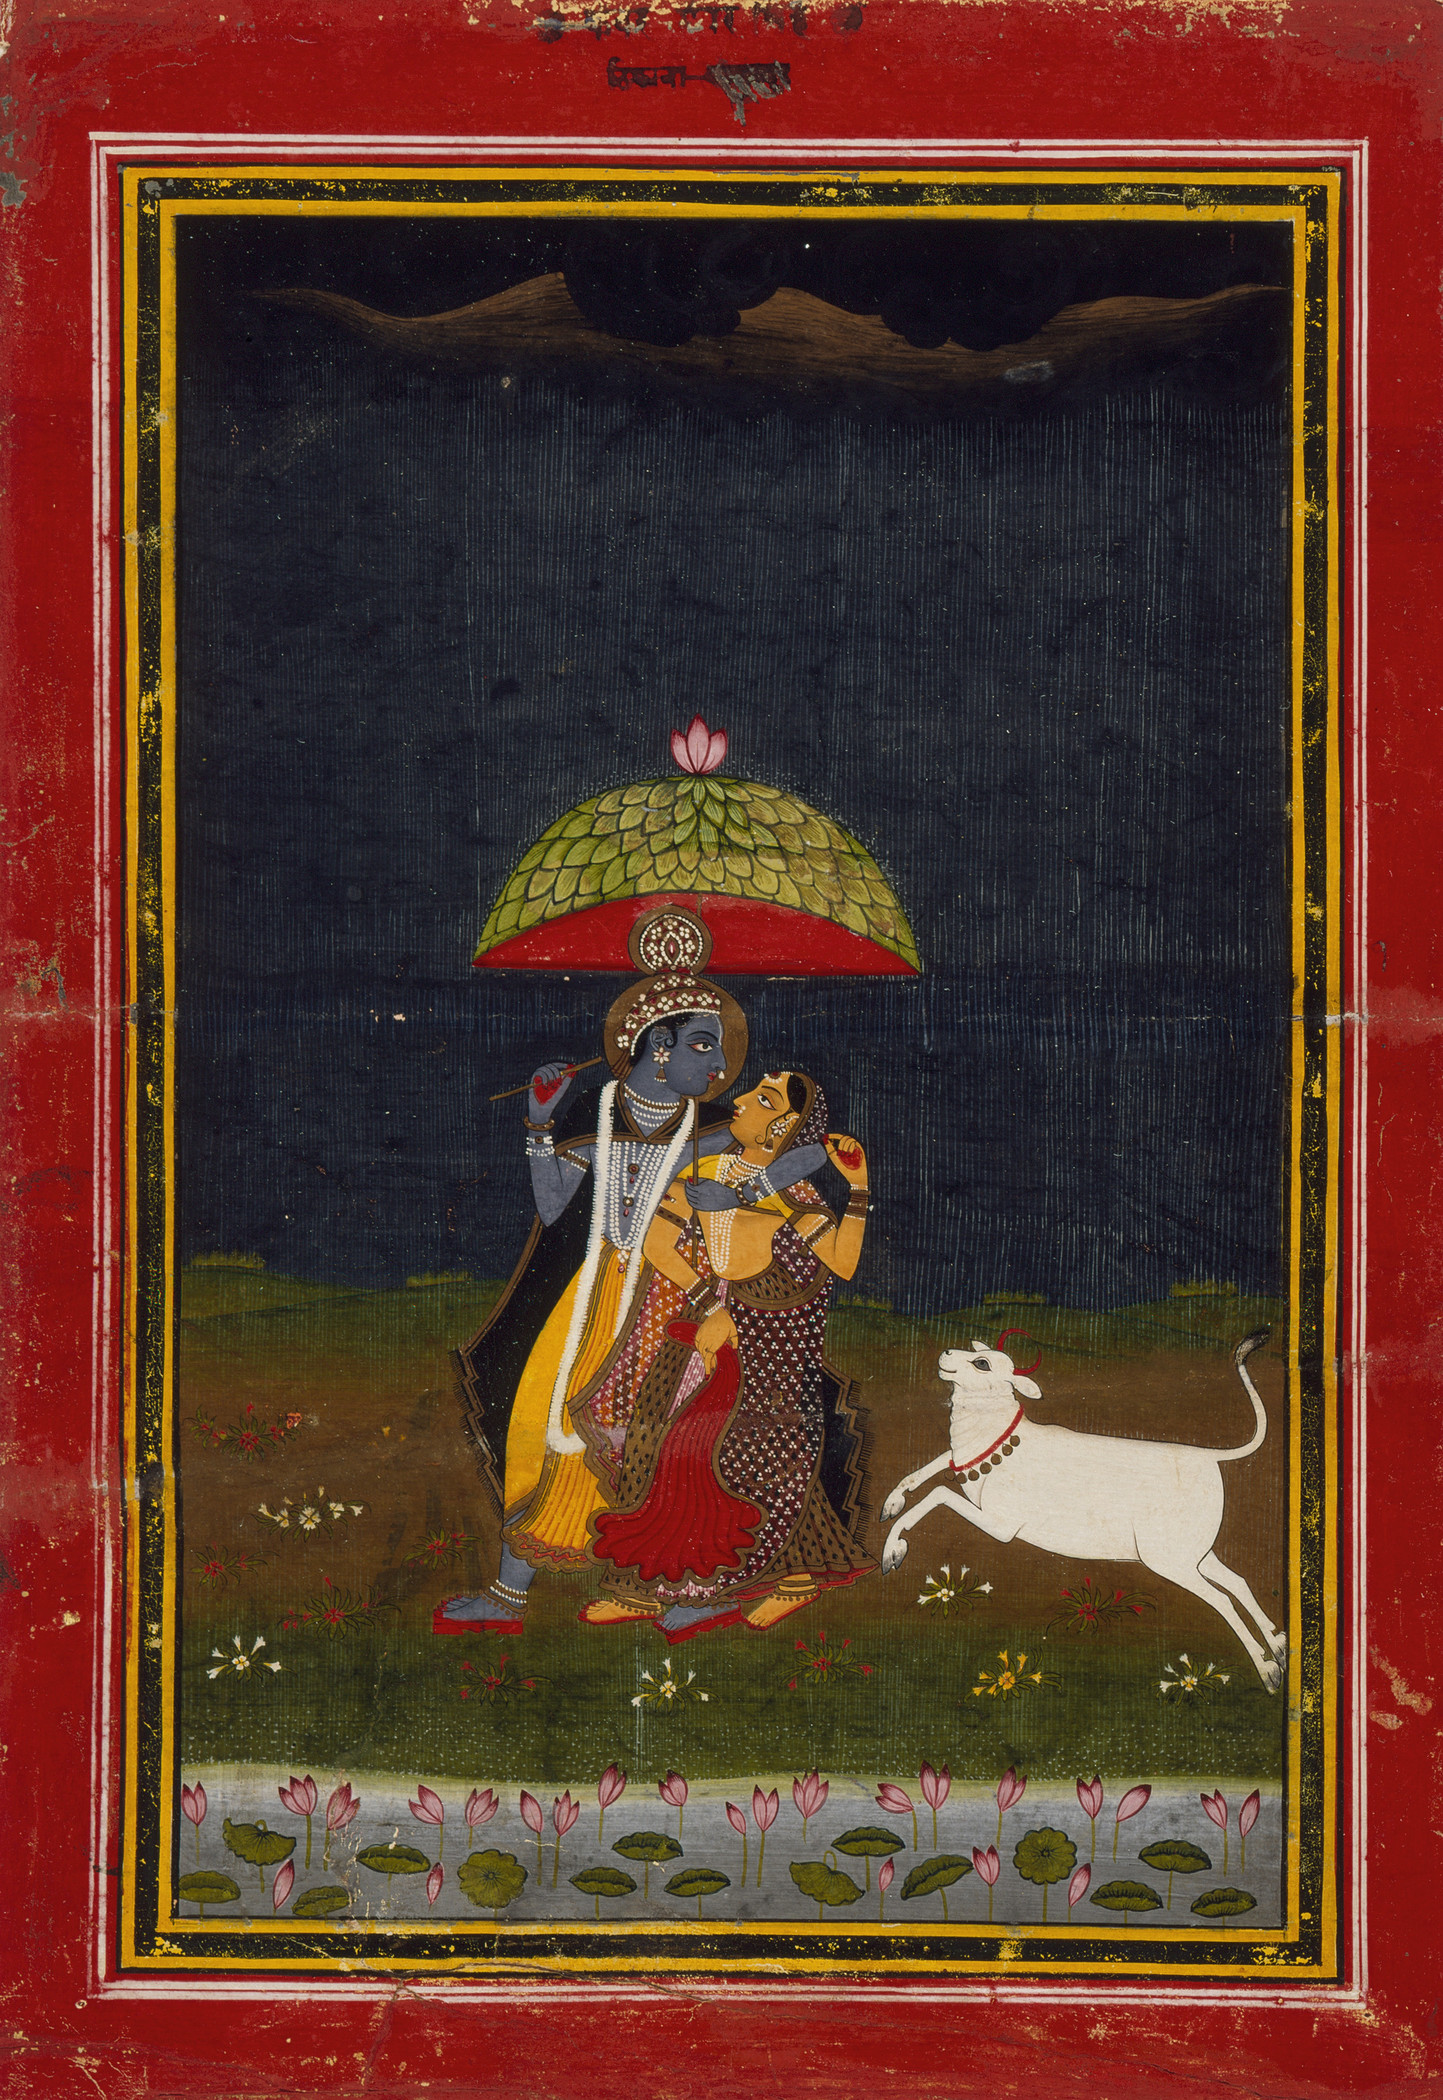 Крішна та Радга гуляють під дощем by Unknown Artist - бл. 1775 р. - 22.54 x 14.6 см 